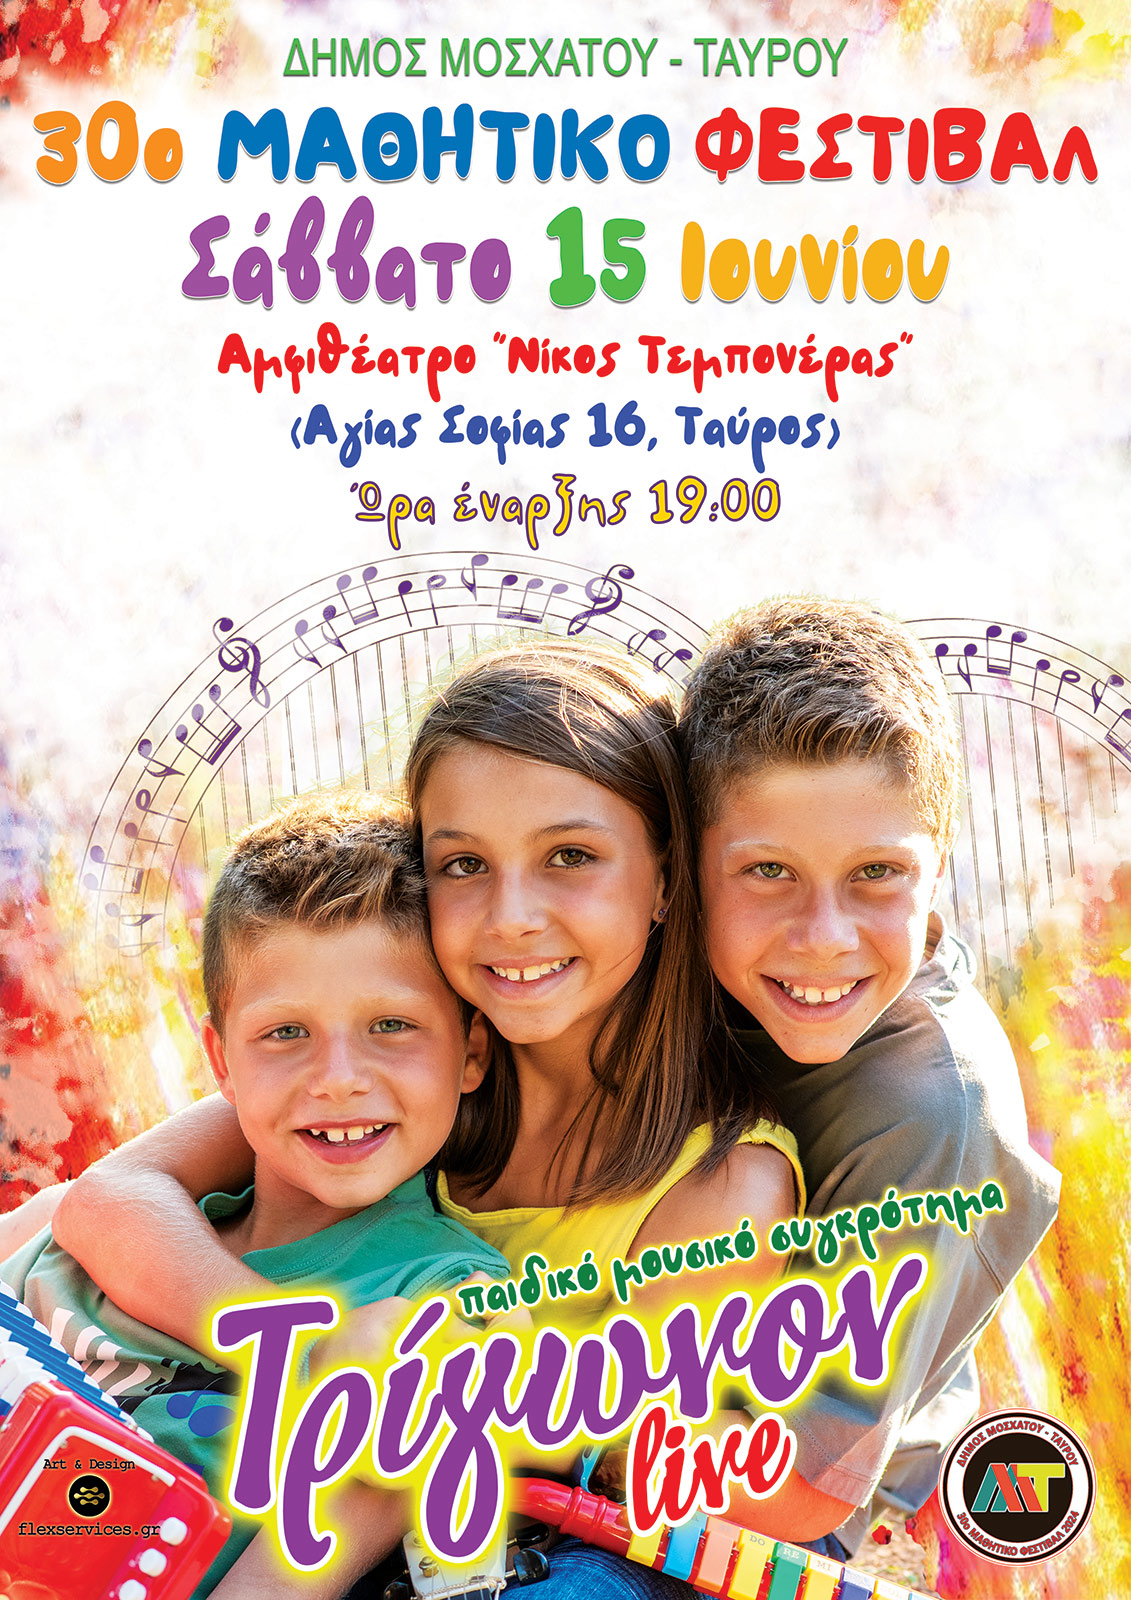 Συνεχίζονται οι εκδηλώσεις του Μαθητικού Φεστιβάλ του Δήμου Μοσχάτου-Ταύρου